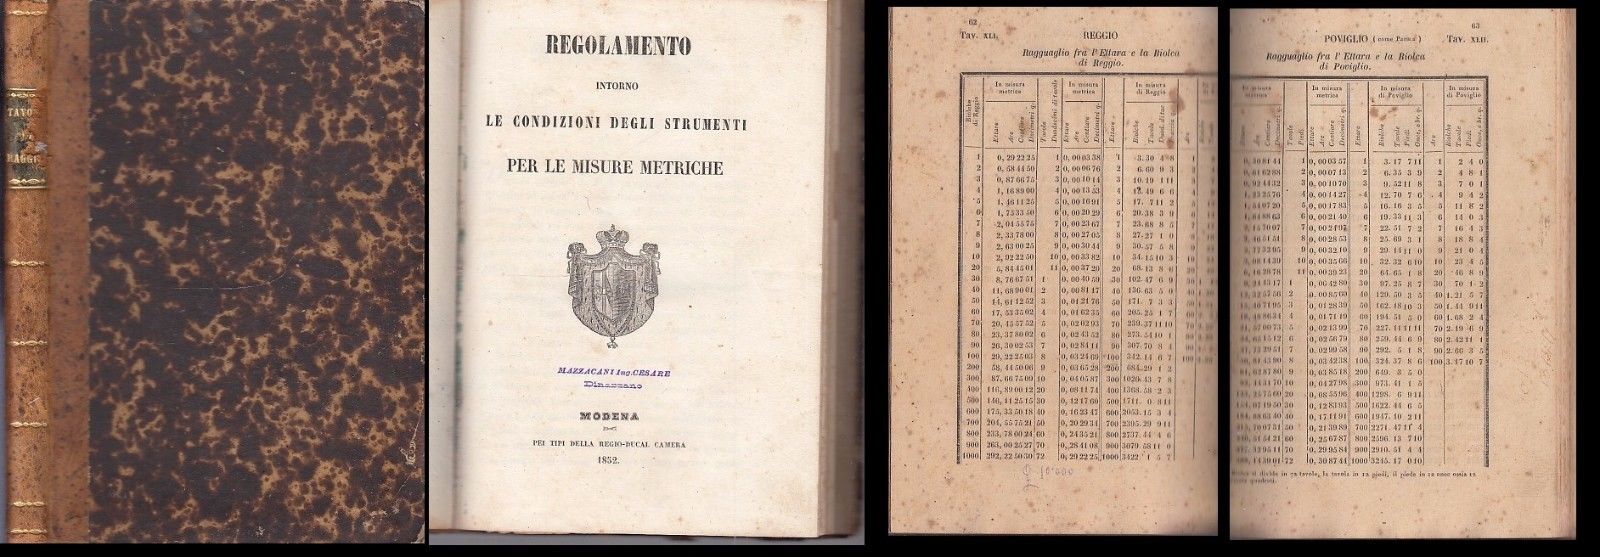 LH- REGOLAMENTO INTORNO CONDIZIONI STRUMENTI MISURE METRICHE - 1852 - C - XDS8